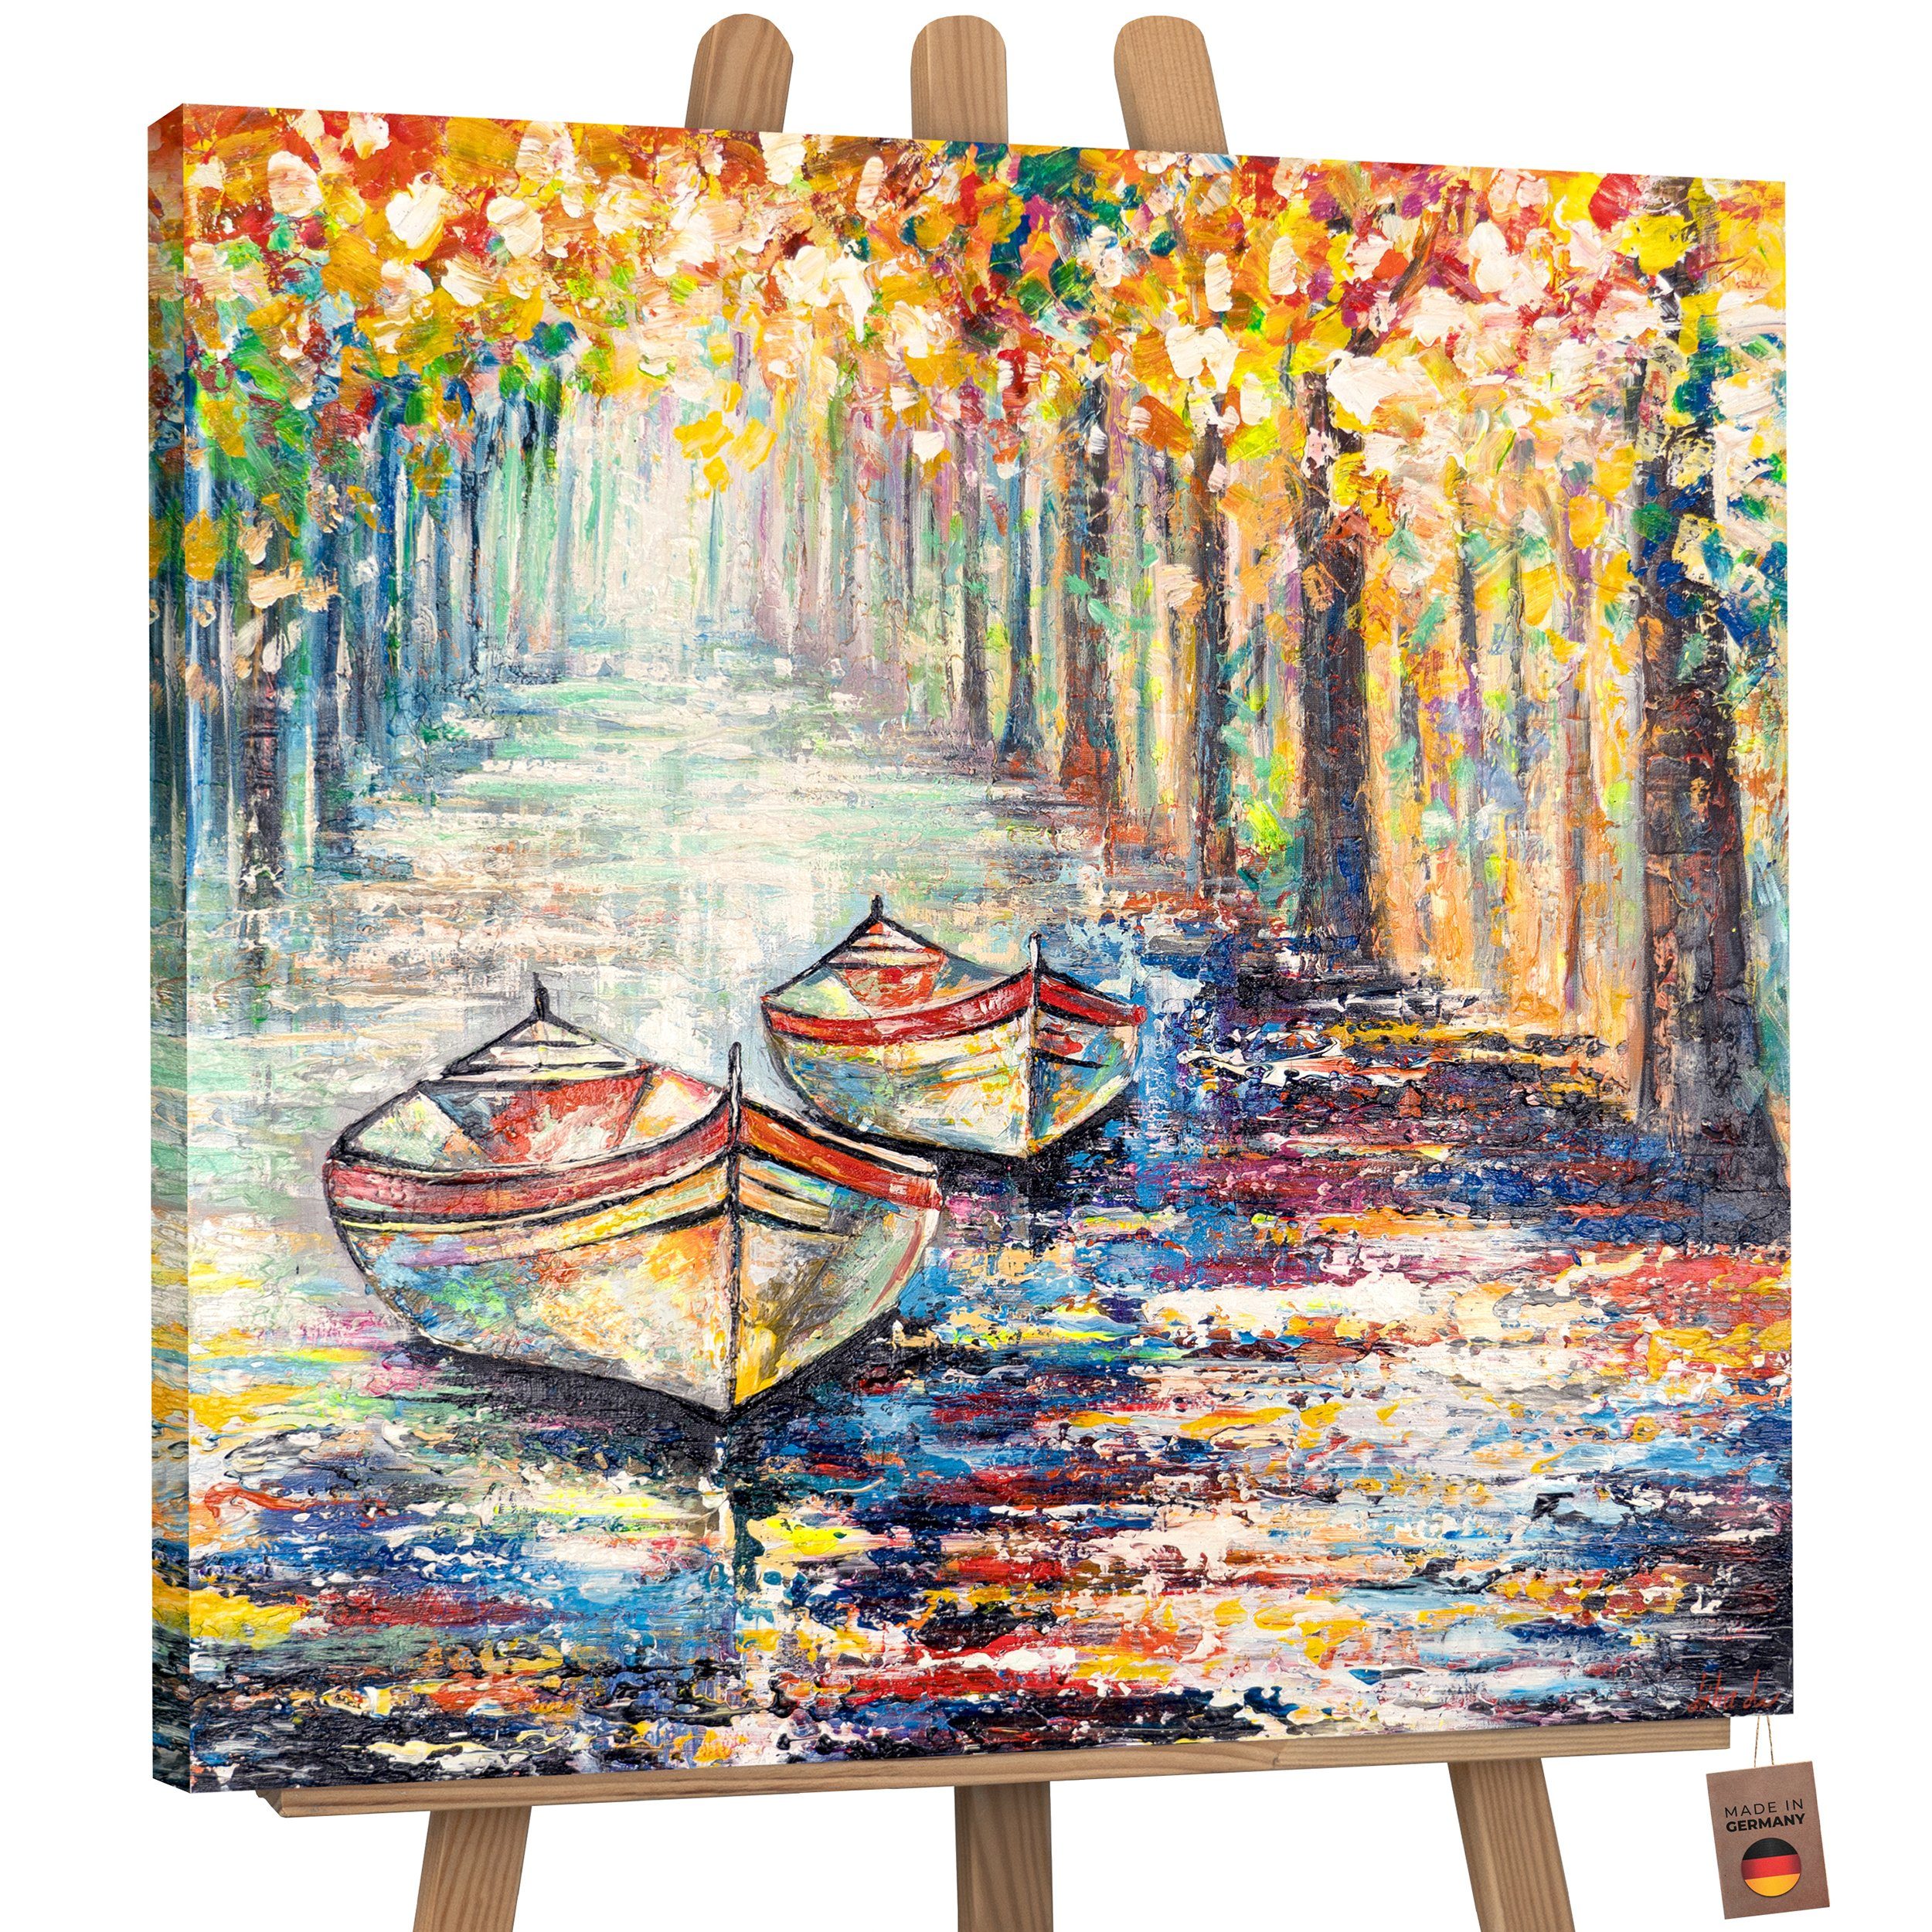 YS-Art Gemälde Herbstlicher Bild Landschaft, Handgemalt Baum Ohne Anlegeplatz, Bunt Schattenfugenrahmen Leinwand Segelboote